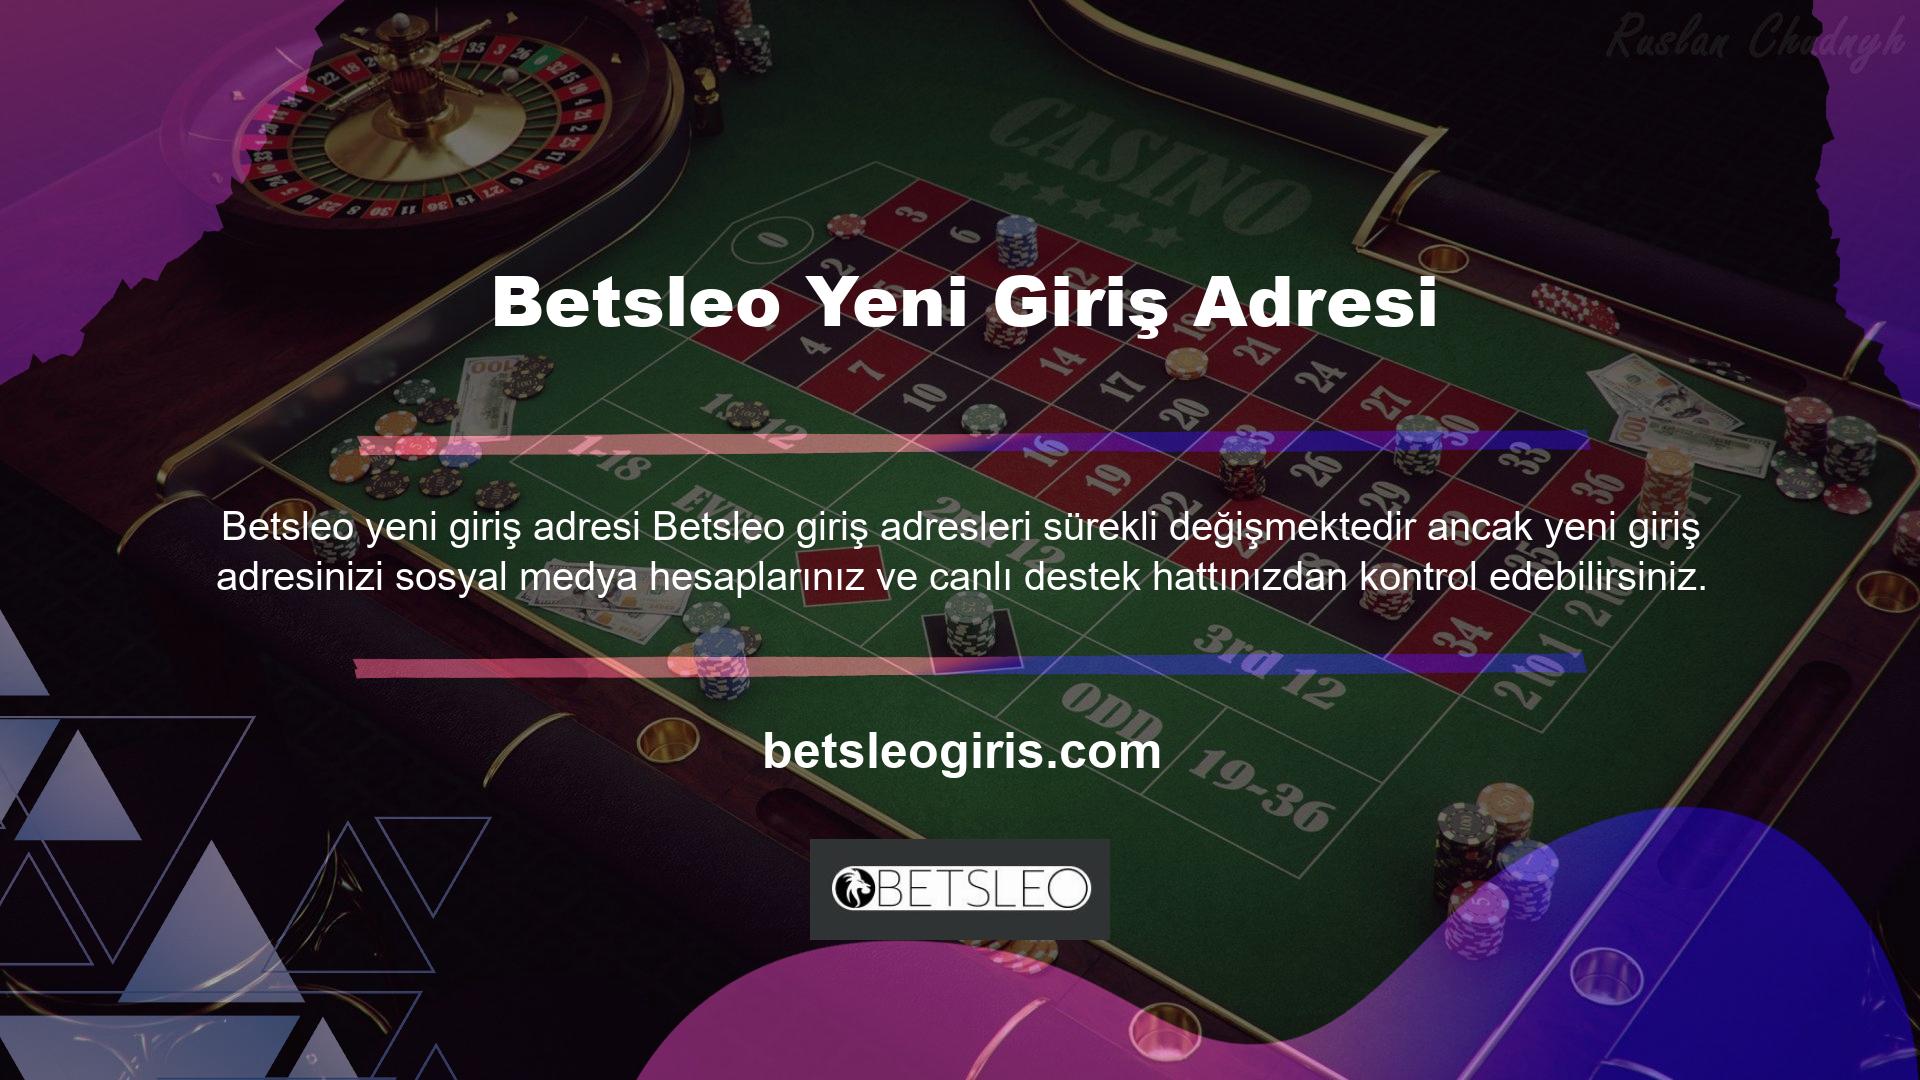 Betsleo casino sitelerinin yeni giriş adresi, kullanıcıların siteye kesintisiz ve kaliteli erişim sağlayabilmesi için tüm teknik altyapıyı güncelliyor